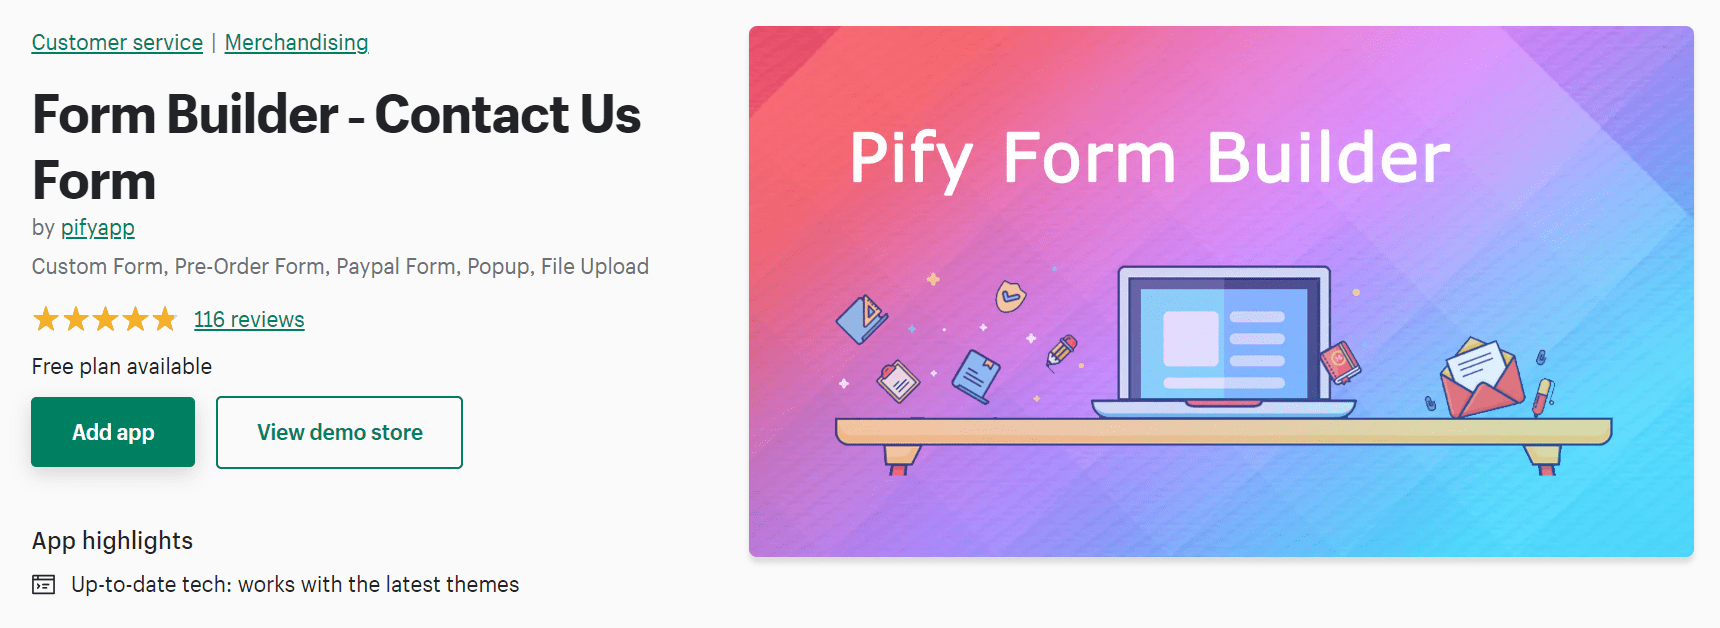 Best form builder for Shopify